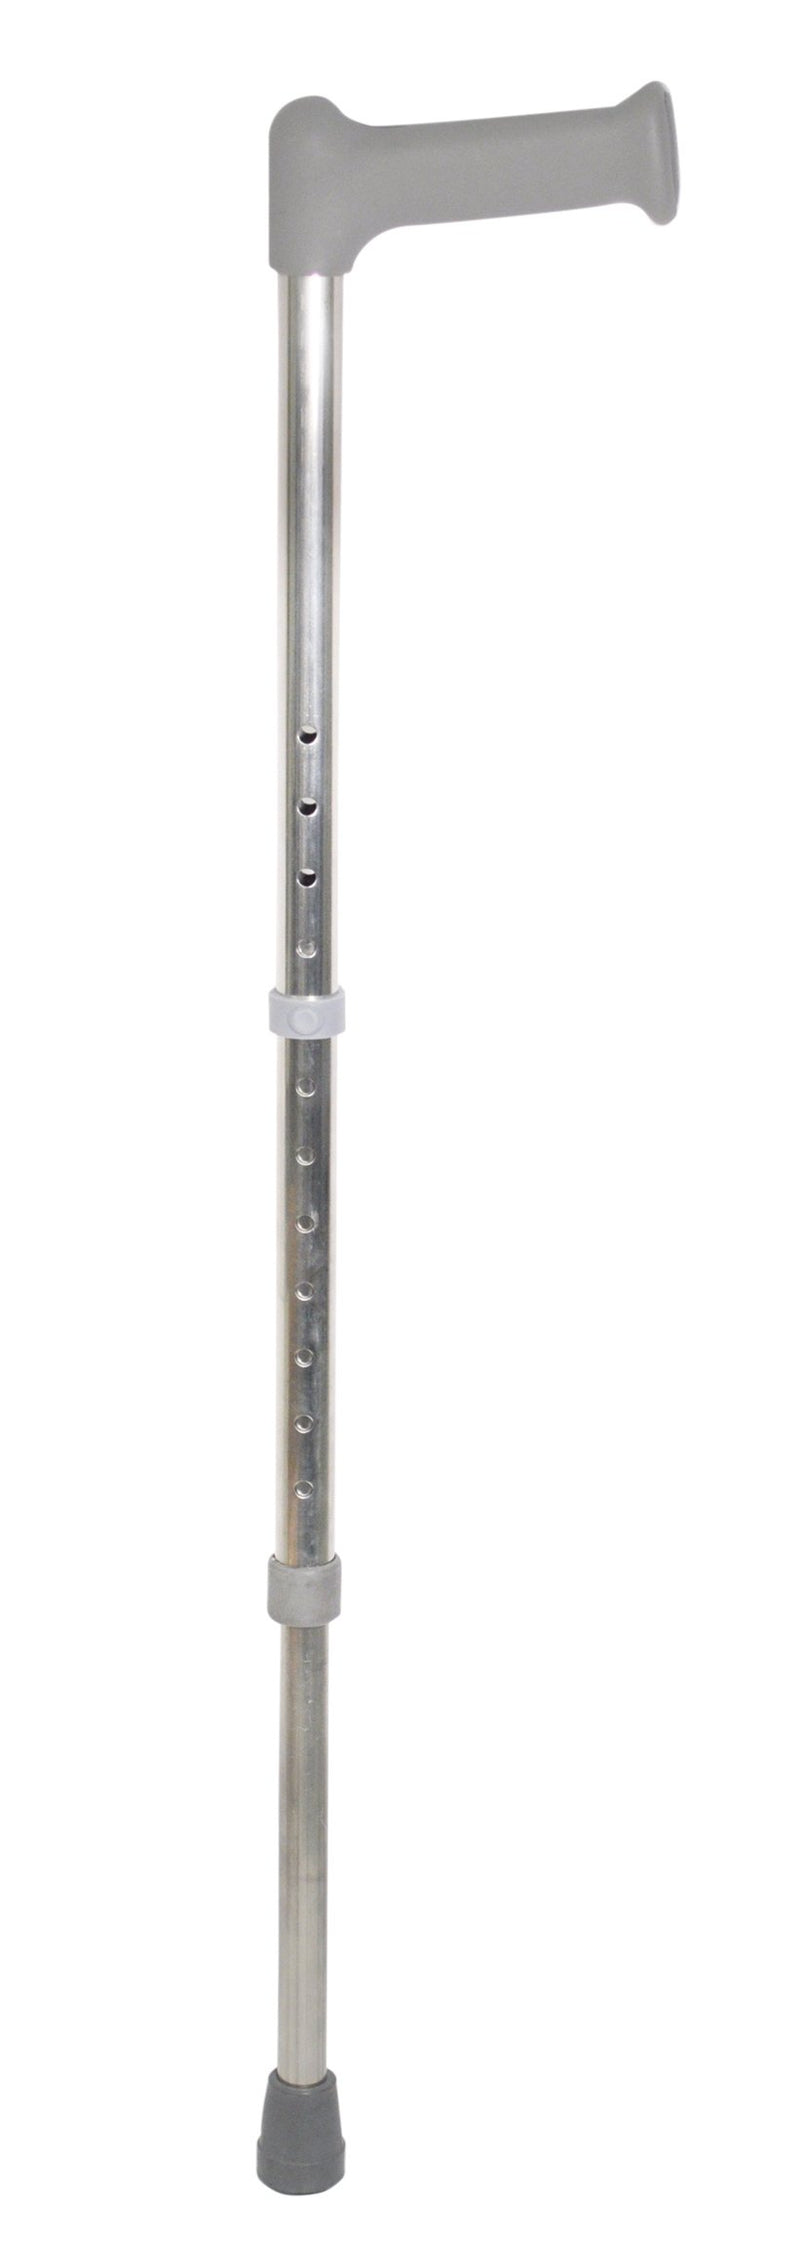 Aluminium Walking Stick Adjustable Height